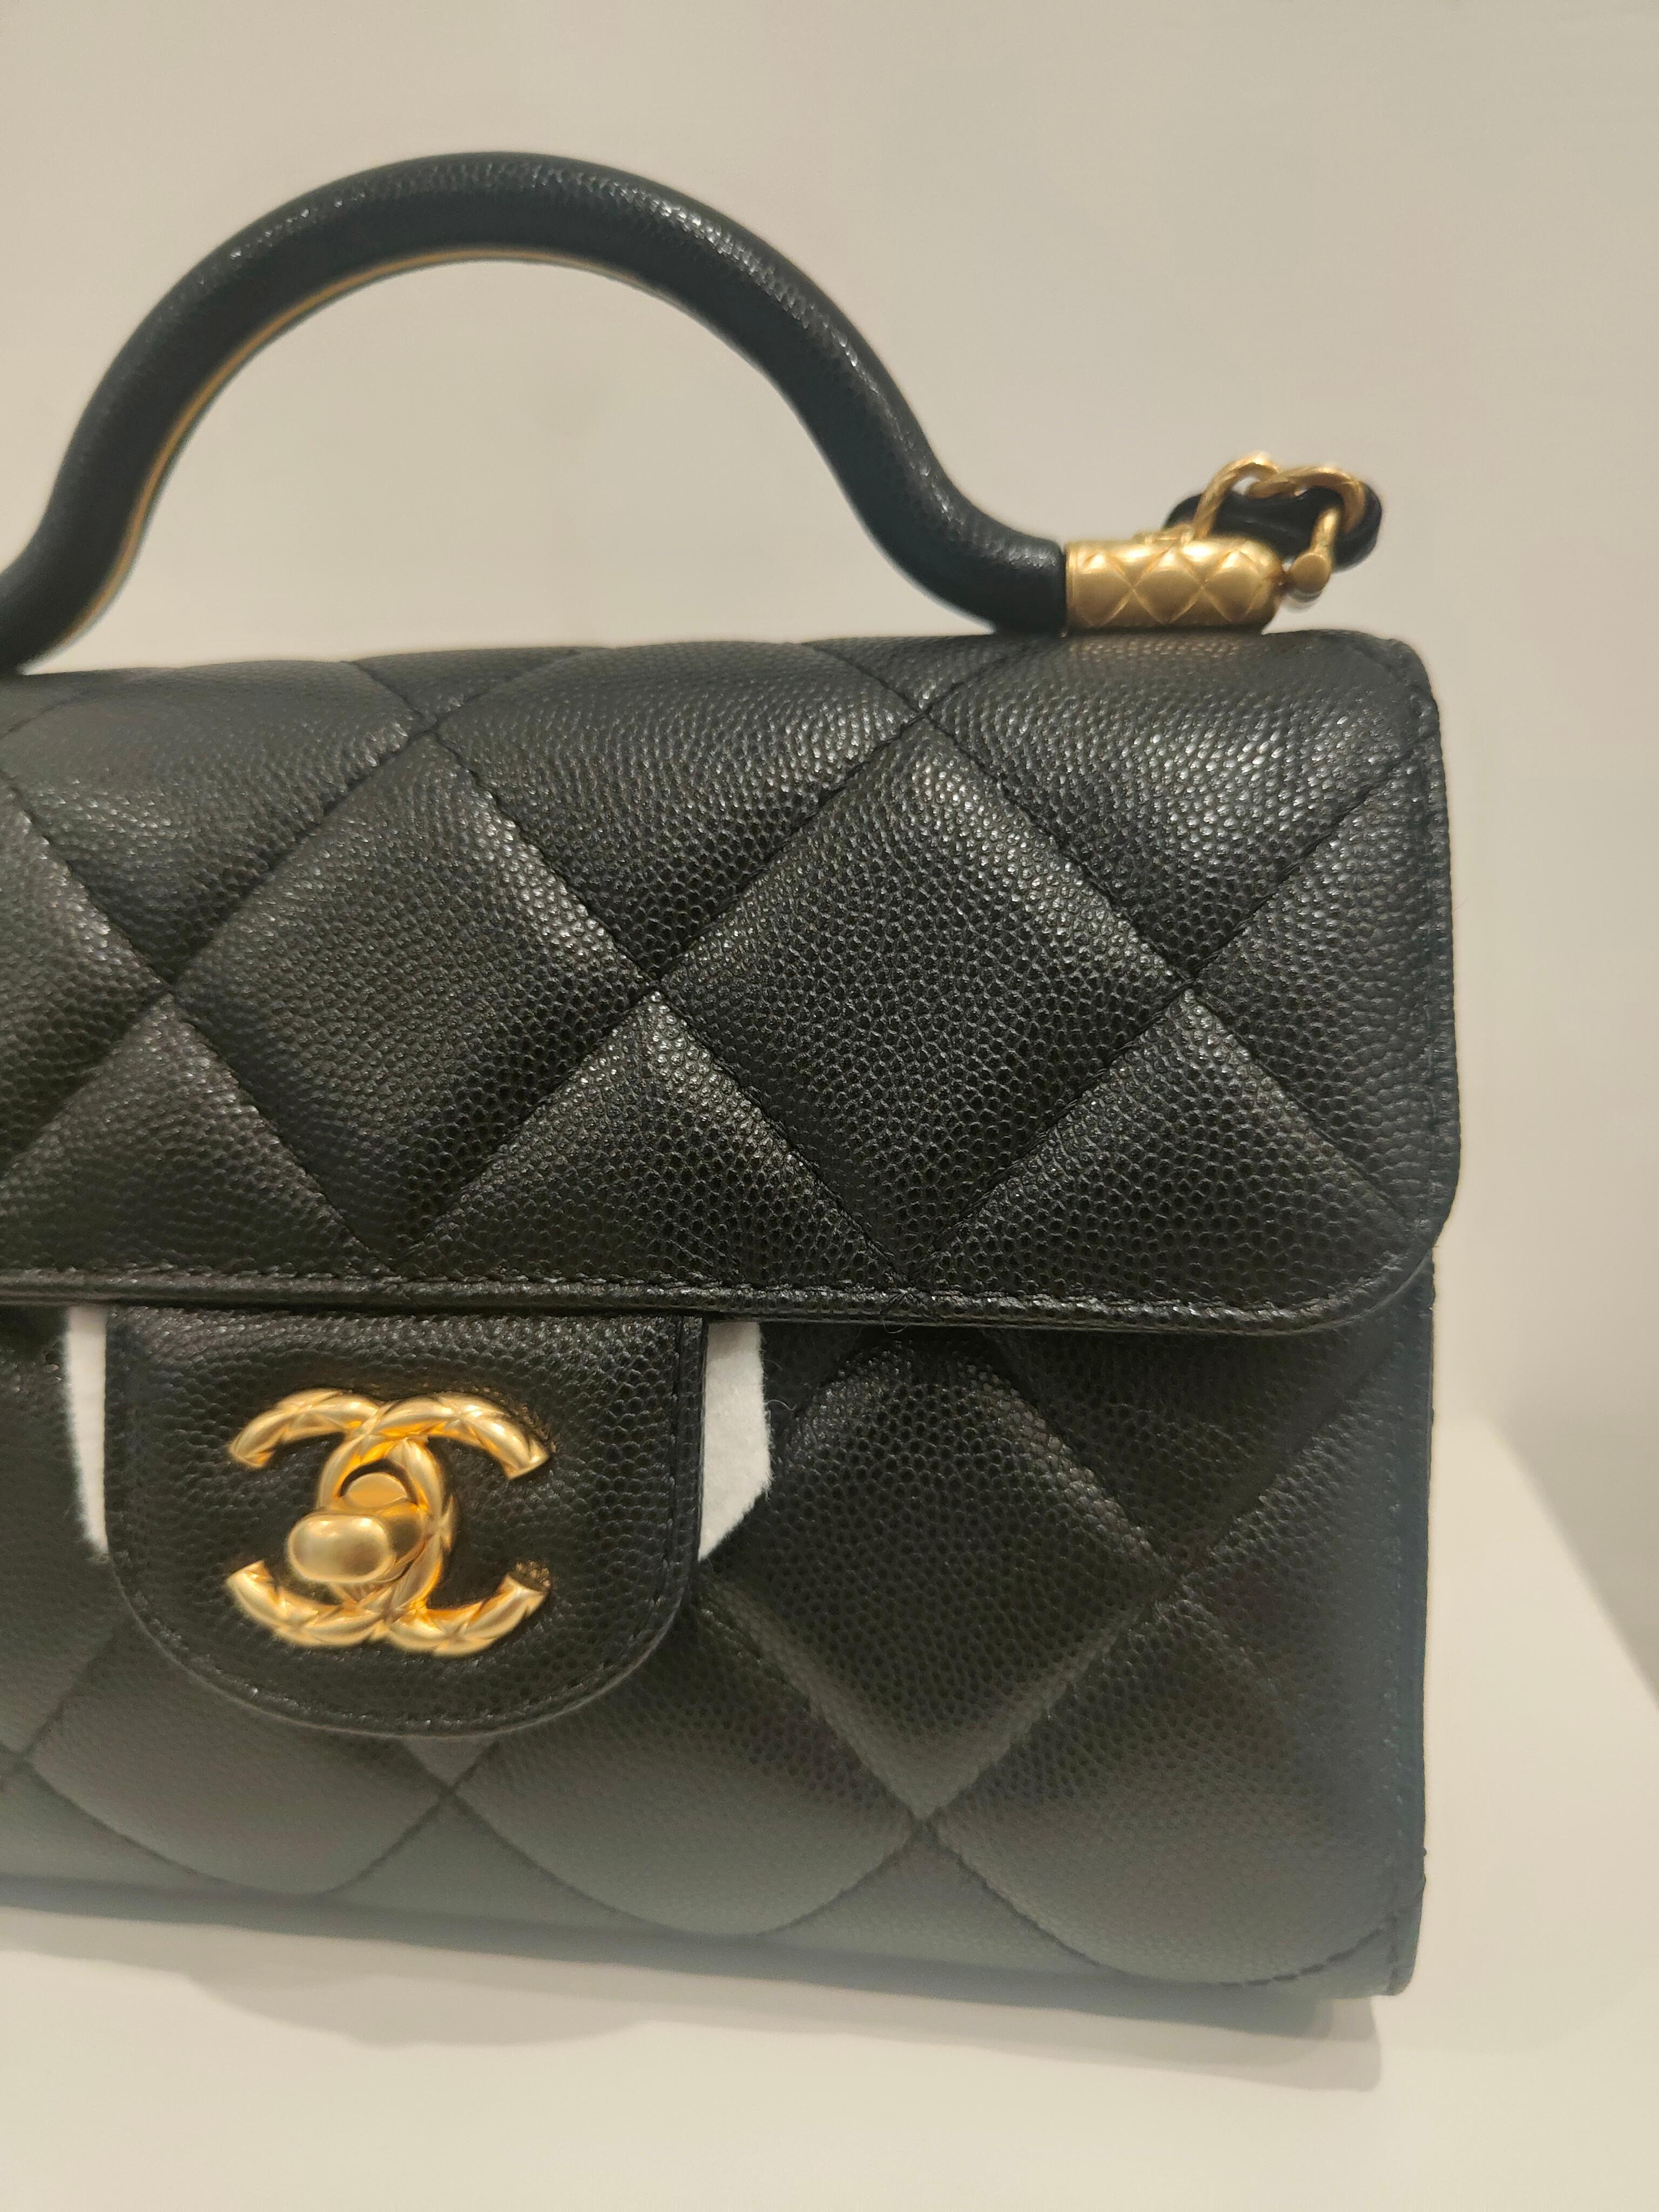 Chanel black caviar leather Gold hardware shoulder bag NWOT 6